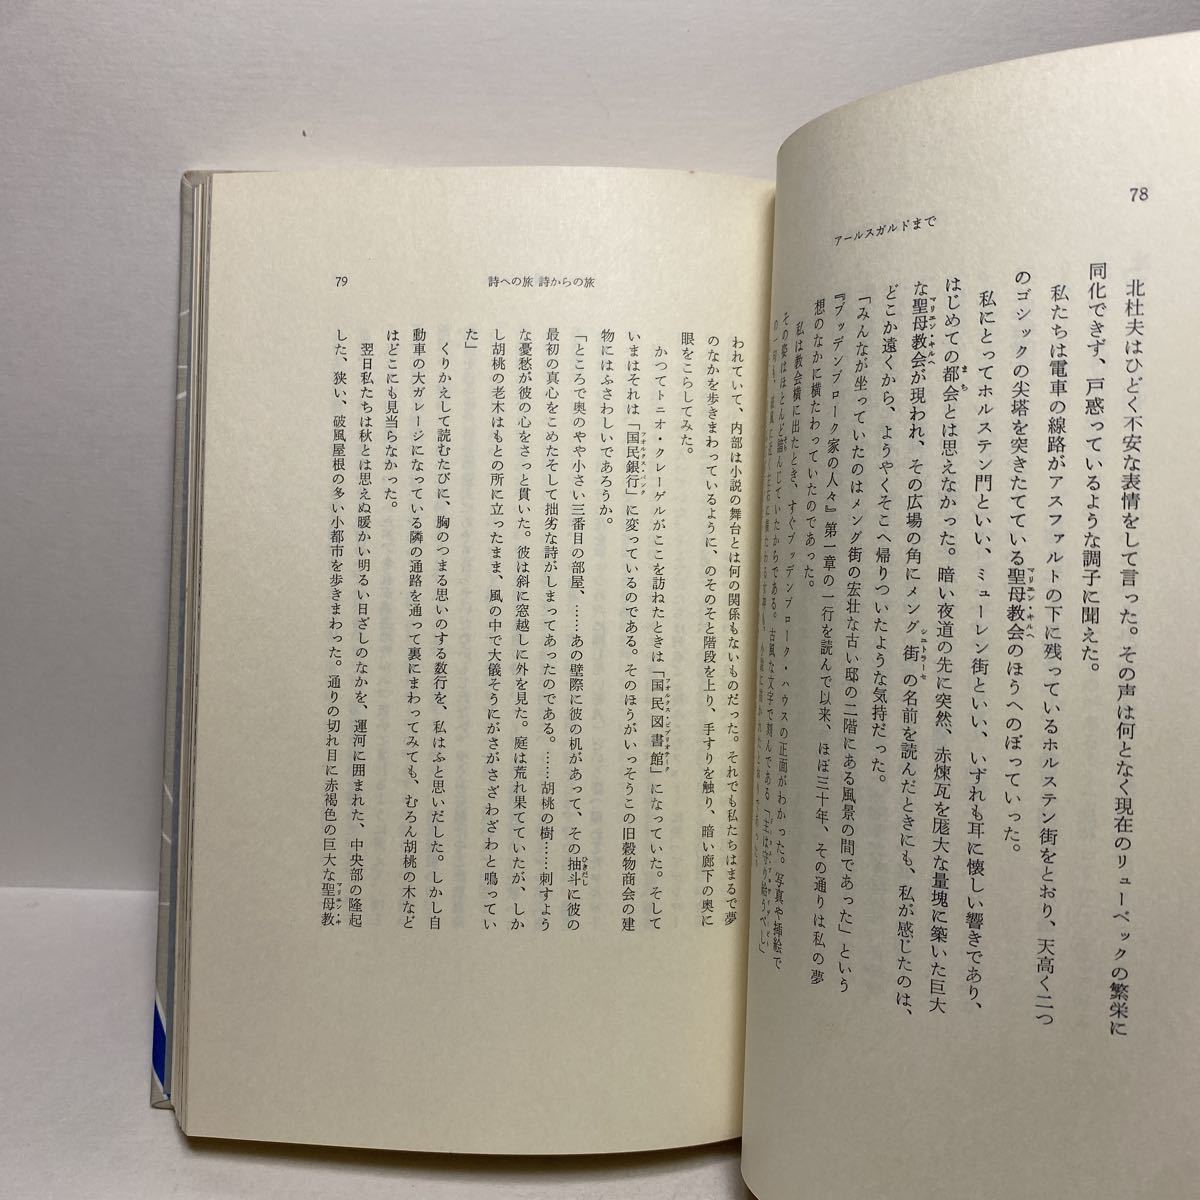 i7/ поэзия к . поэзия c . Tsuji Kunio .. книжный магазин 1974 год первая версия стоимость доставки 180 иен ( Yu-Mail )③